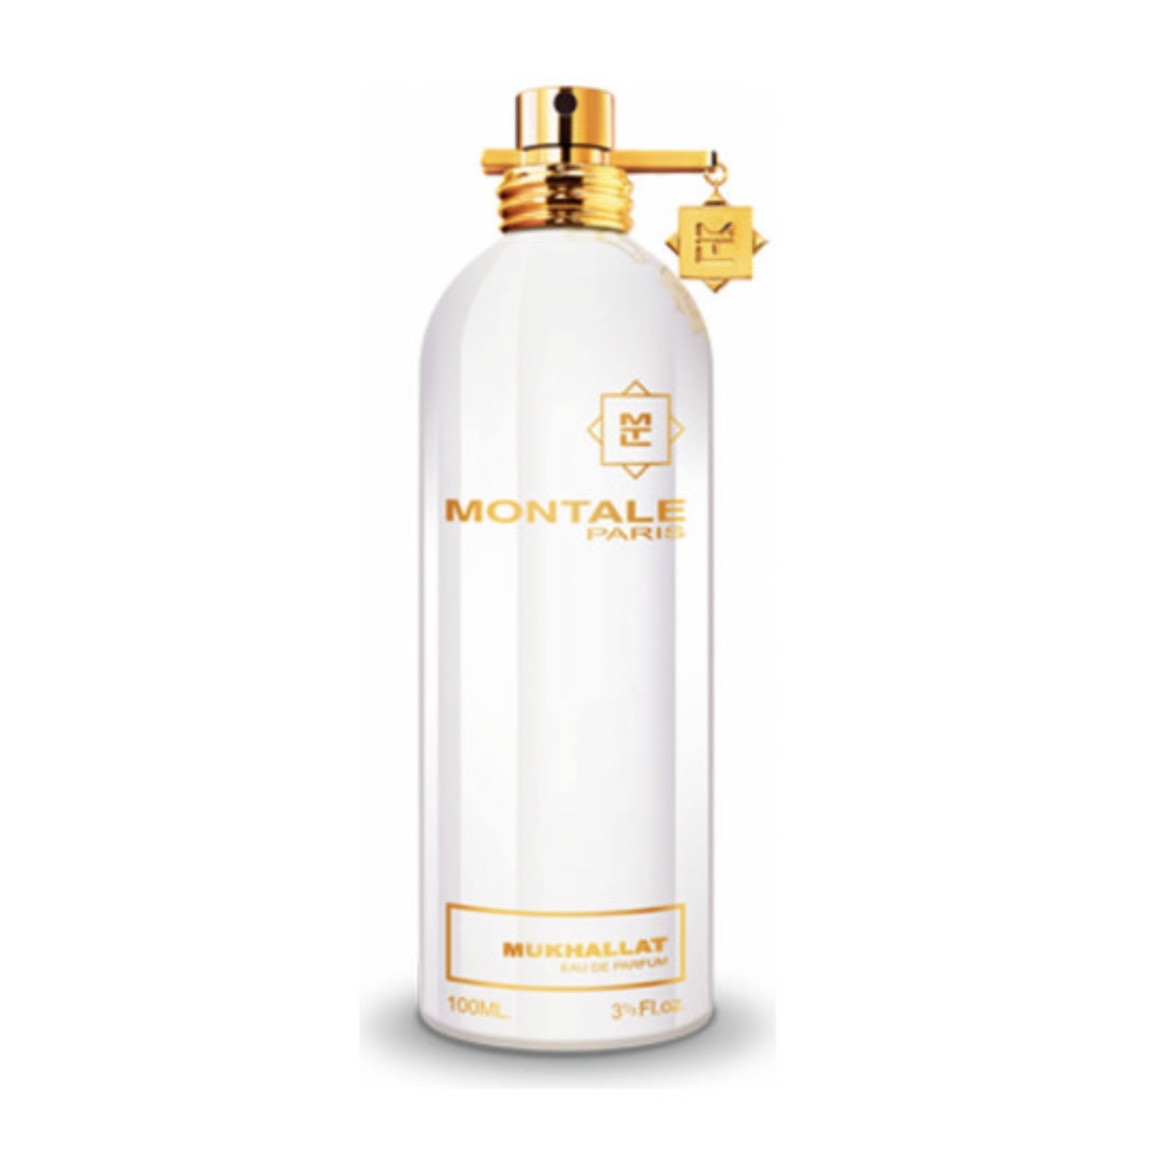 Оригінальна нішева парфумована вода Montale Mukhallat 100ml тестер, солодкий східний аромат